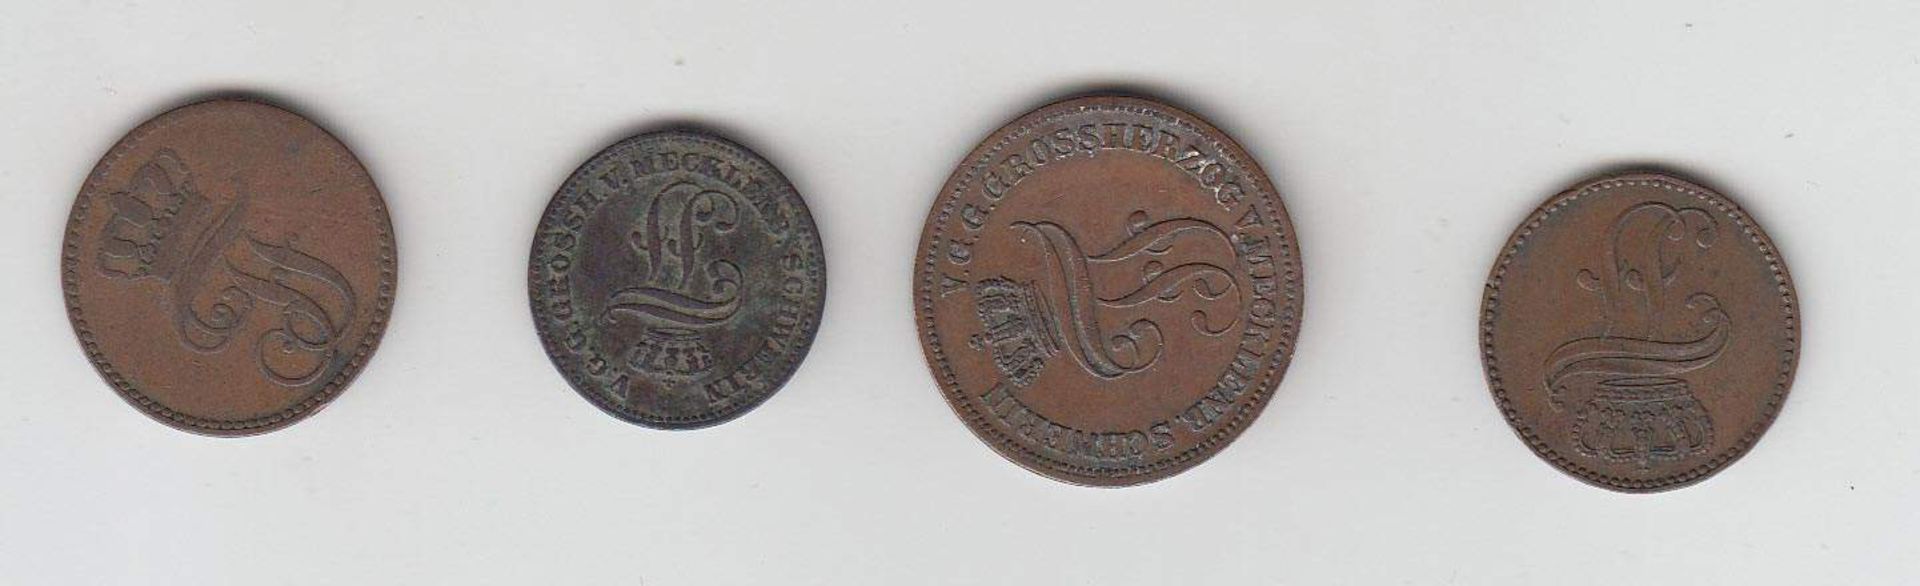 4 MünzenMecklenburg Schwerin 1845 - 1872, KupferAufrufpreis: 10 EUR - Bild 2 aus 2